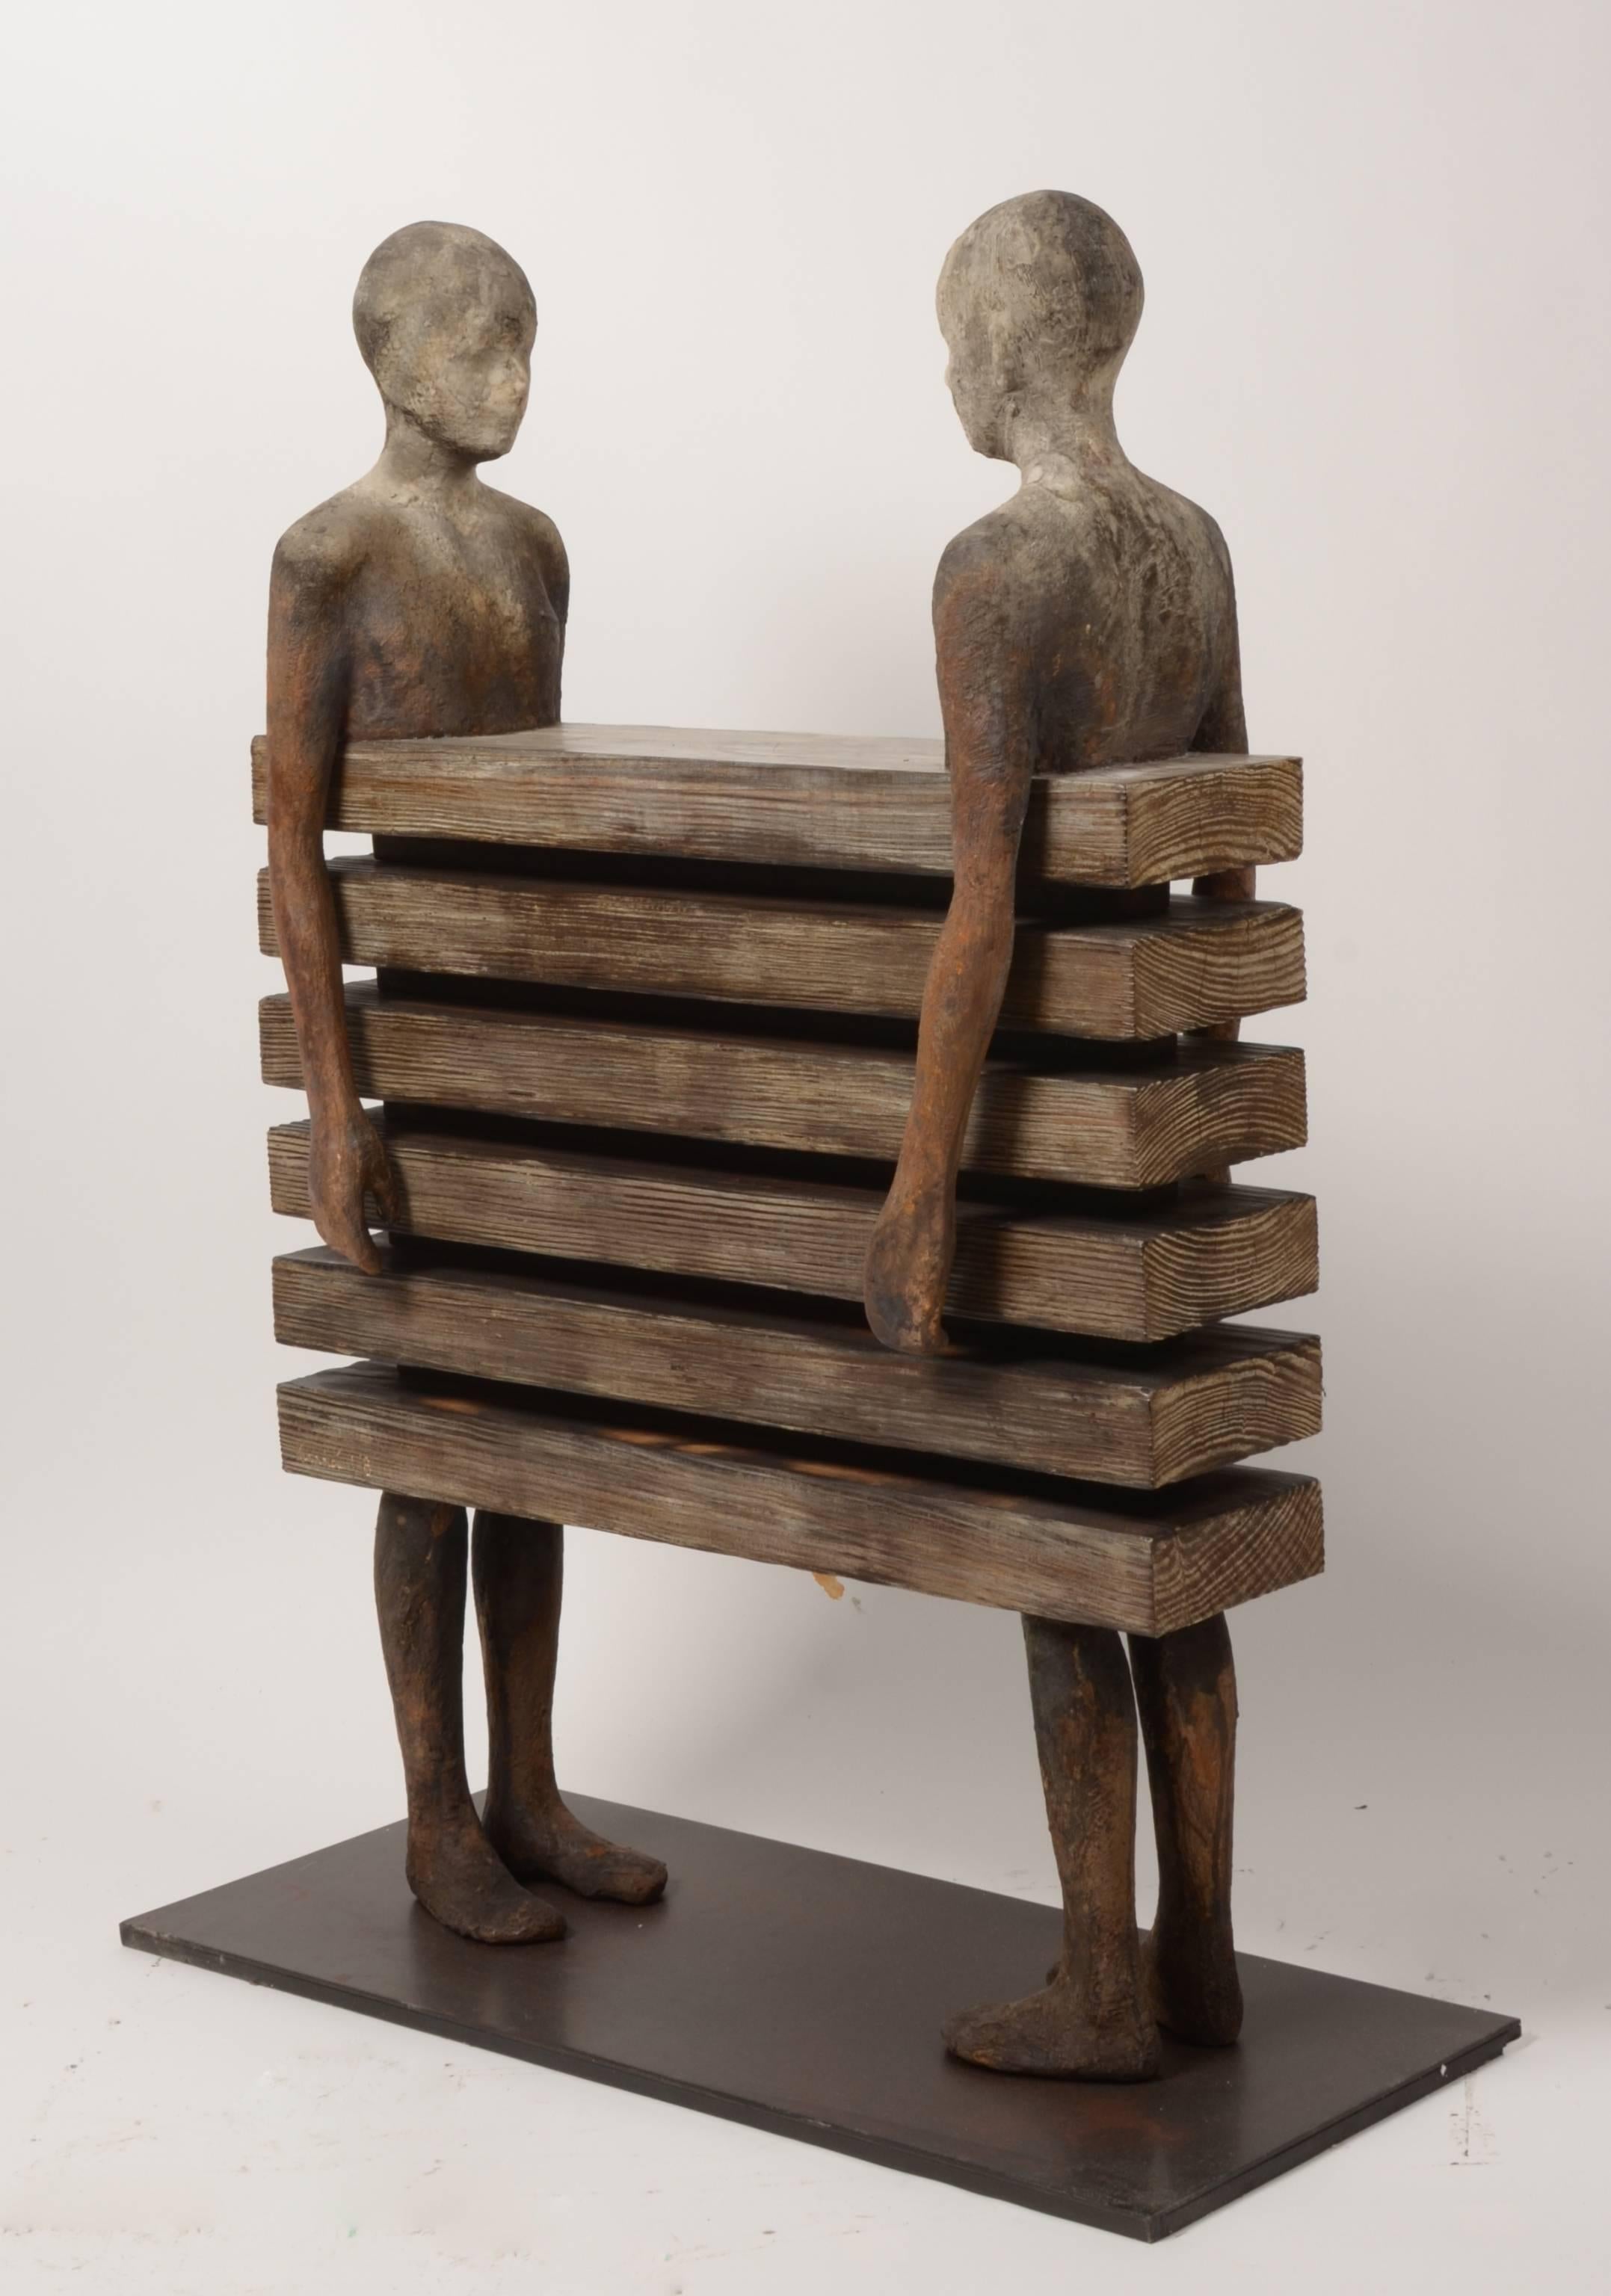 Enfrentados - Sculpture by Jesus Curia Perez